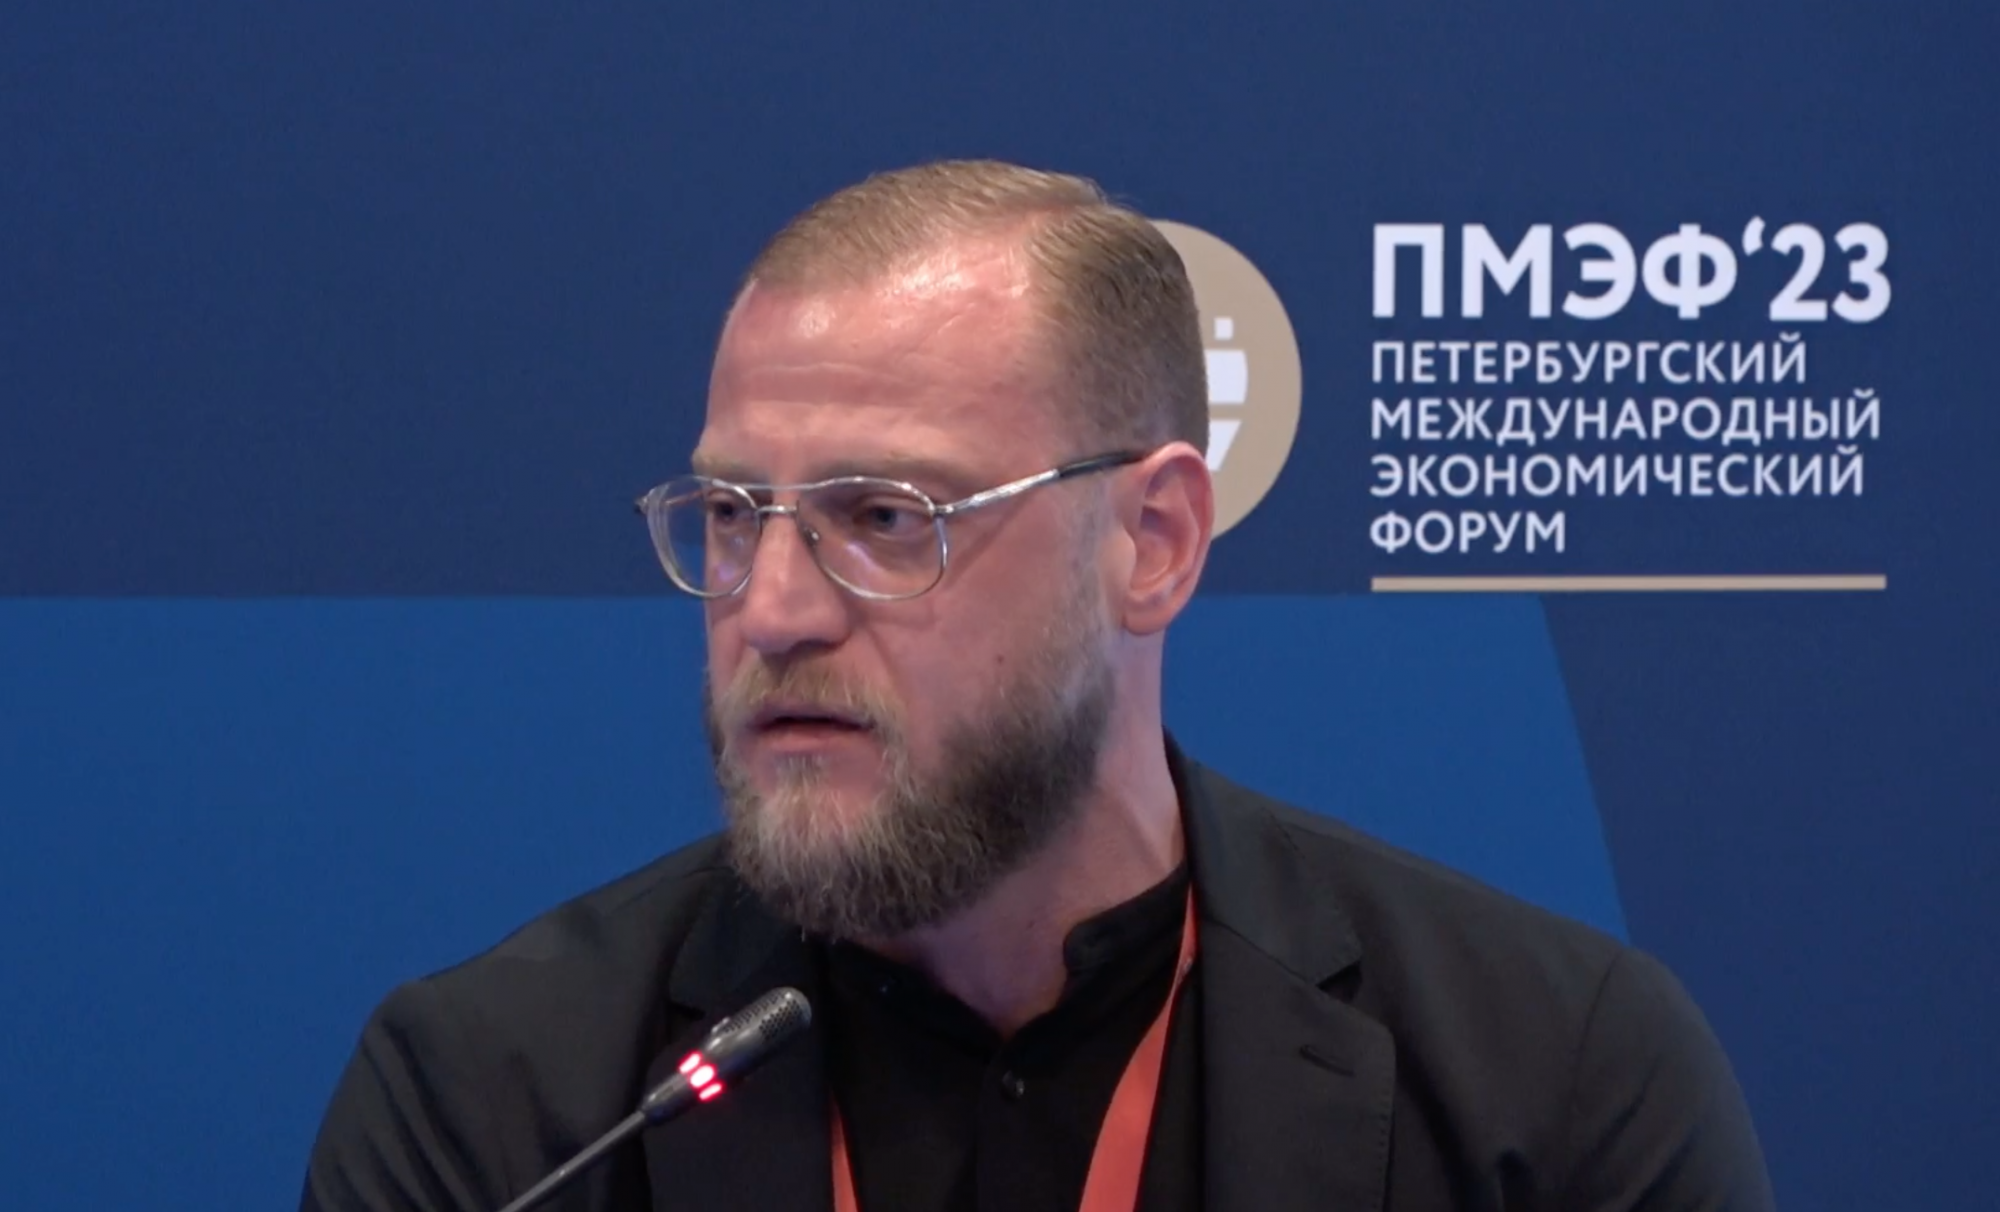 Миша Маваши: Якубов сейчас 100% уедет на трешку